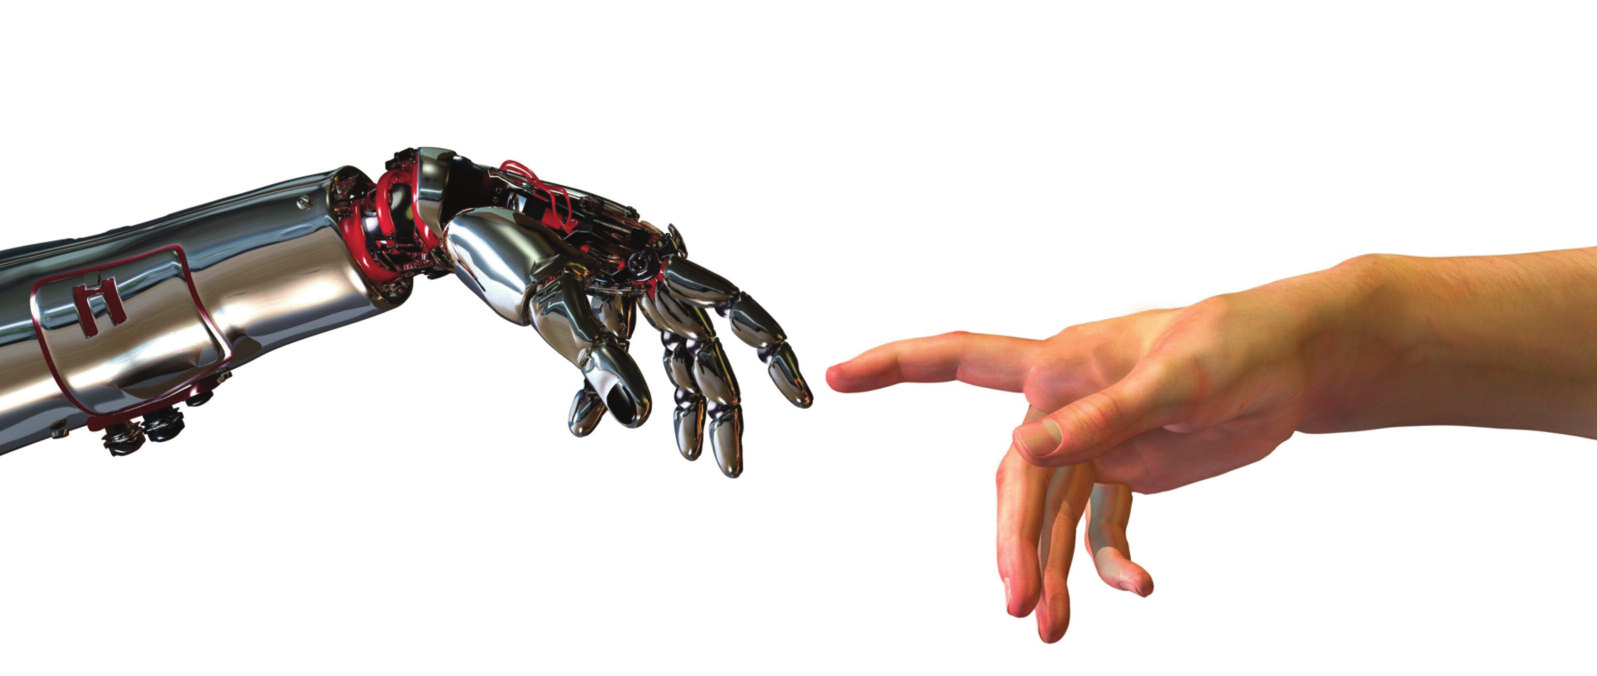 Τι είναι η ρομποτική Είναι σύγχρονος τεχνολογικός κλάδος της αυτοματοποίησης, που έχει ως αντικείμενο τη μελέτη, το σχεδιασμό και τη λειτουργία των ρομπότ, καθώς και την έρευνα για την περαιτέρω